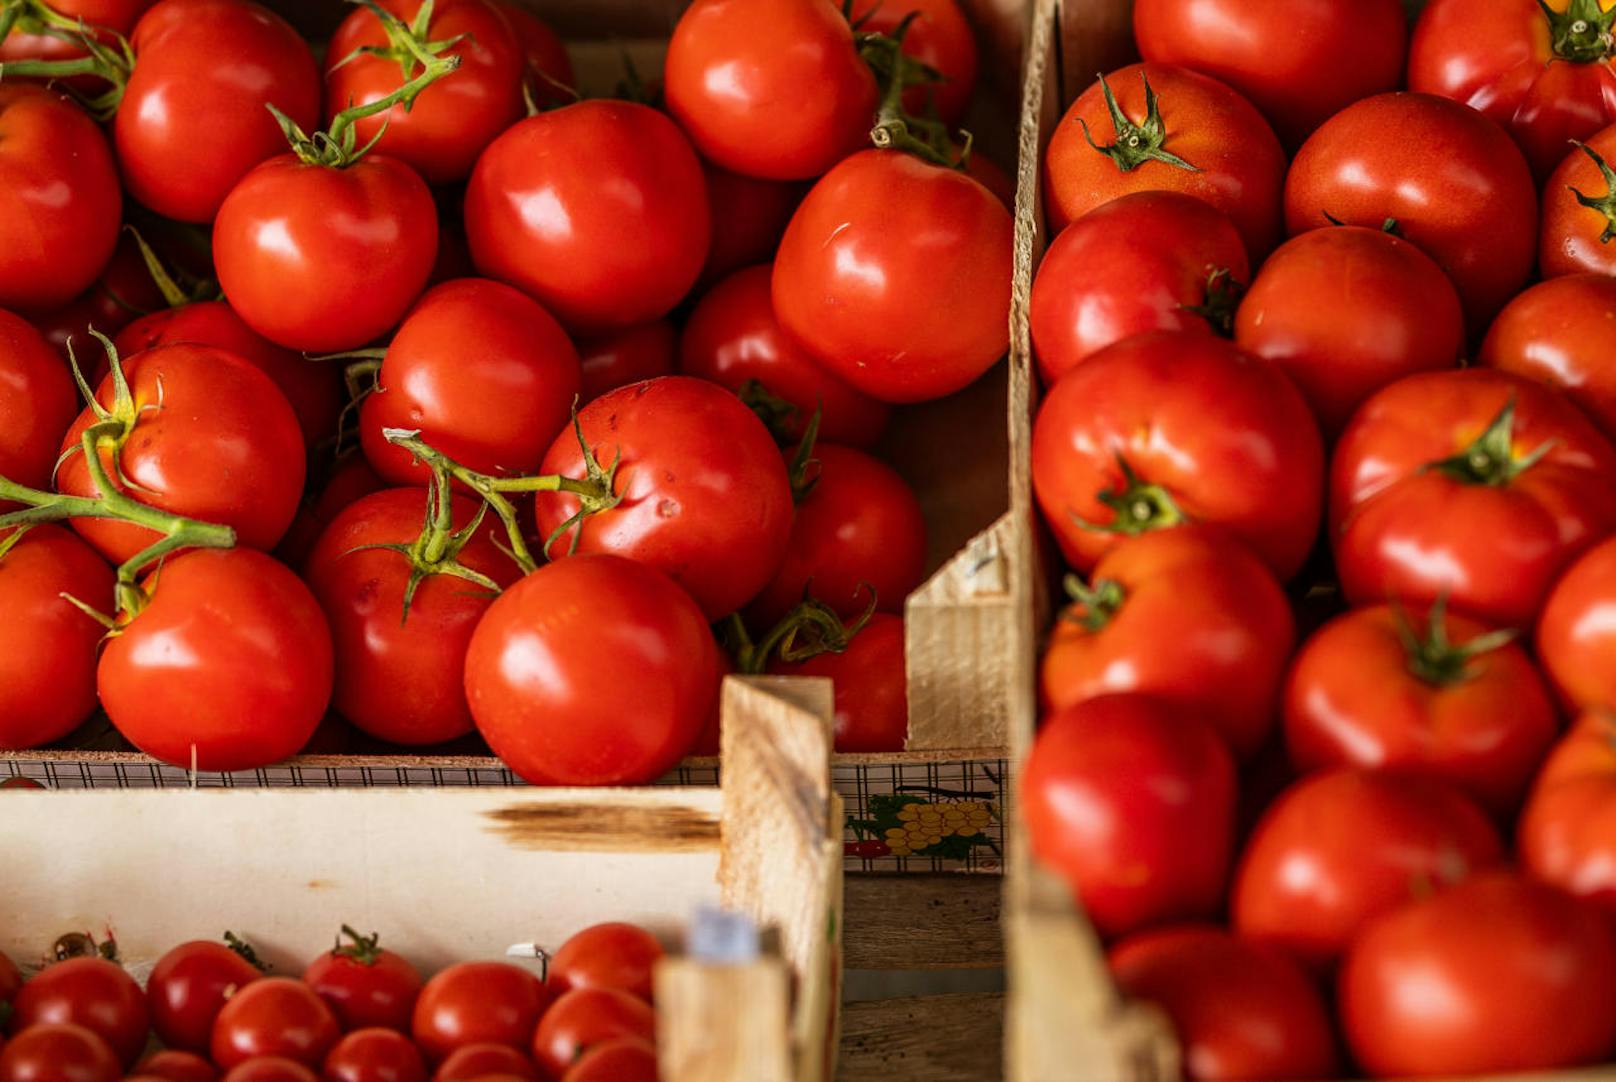 Auch Paradeiser stammen aus der Neuen Welt. Im Bild: Verschiedene Tomaten-Sorten auf einem Markt in Fazana, Kroatien.